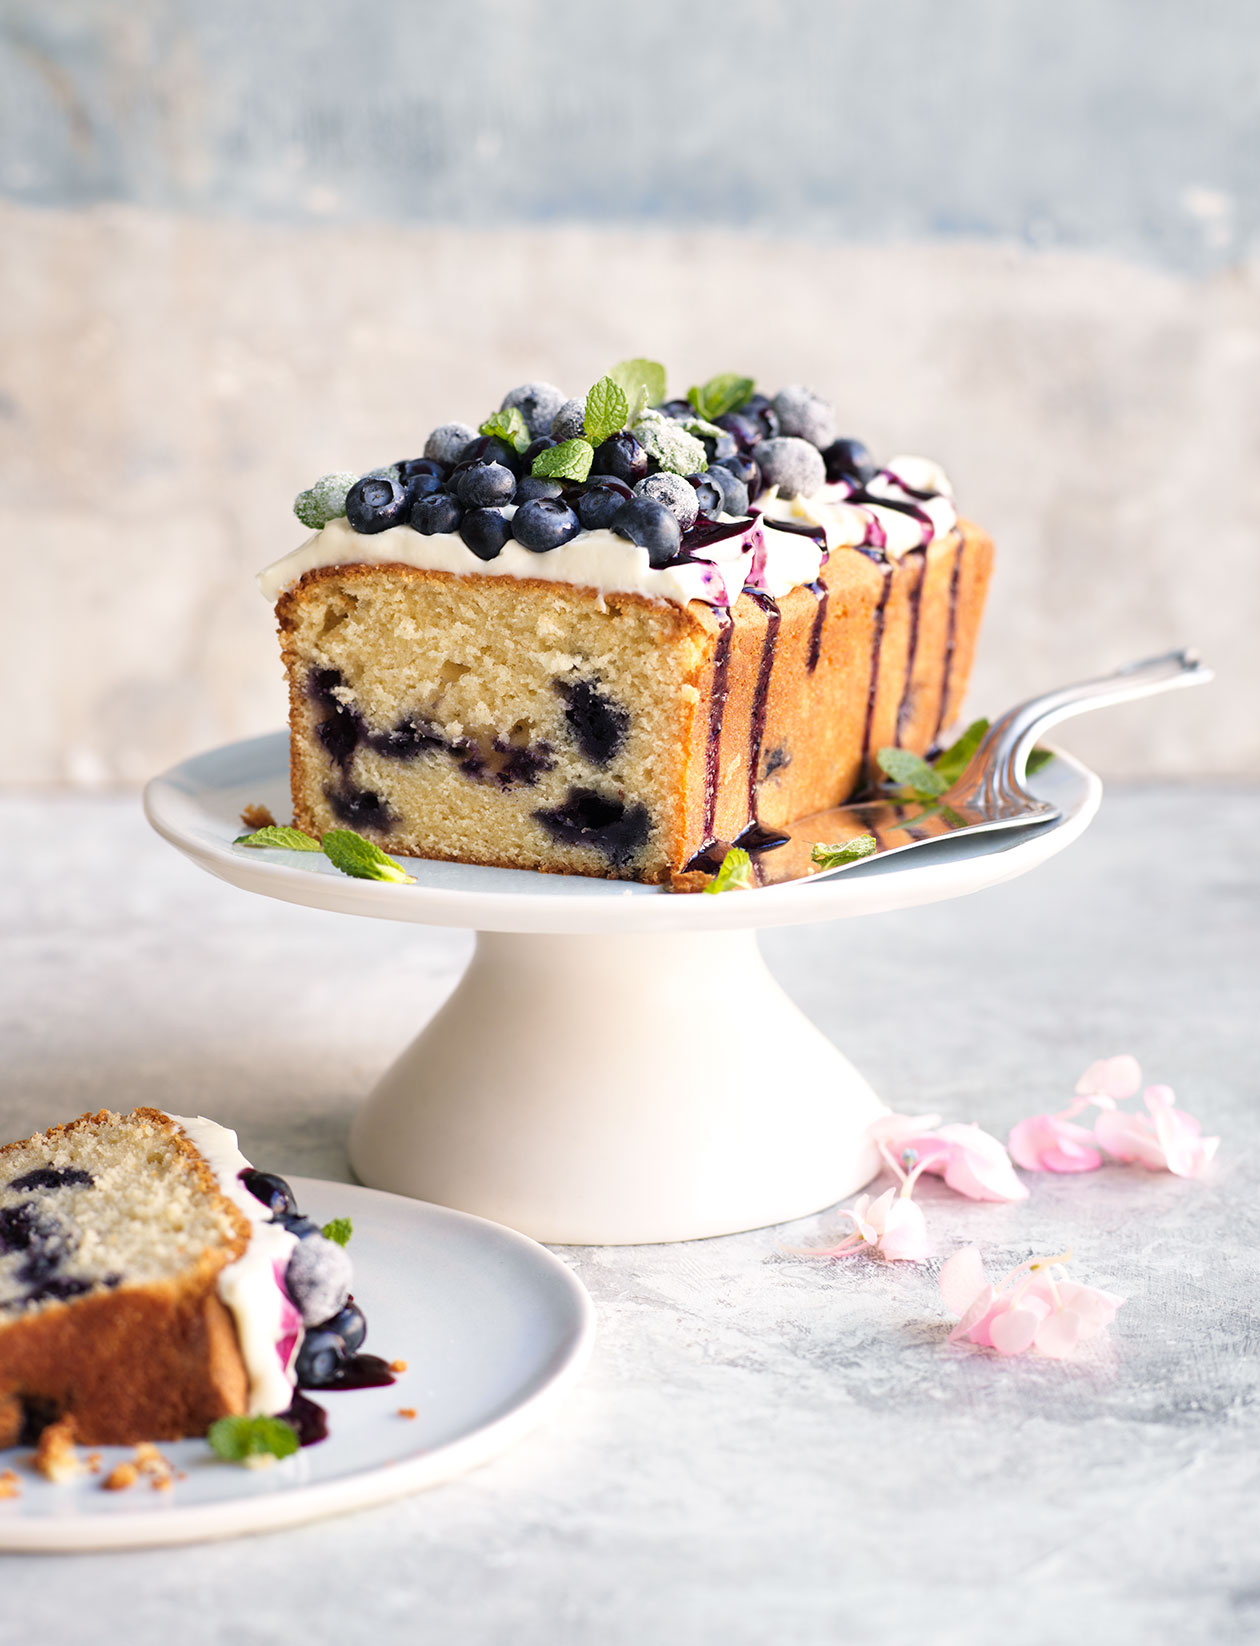 Best Lemon-Blueberry Loaf Cake - How to Make Lemon-Blueberry Loaf Cake